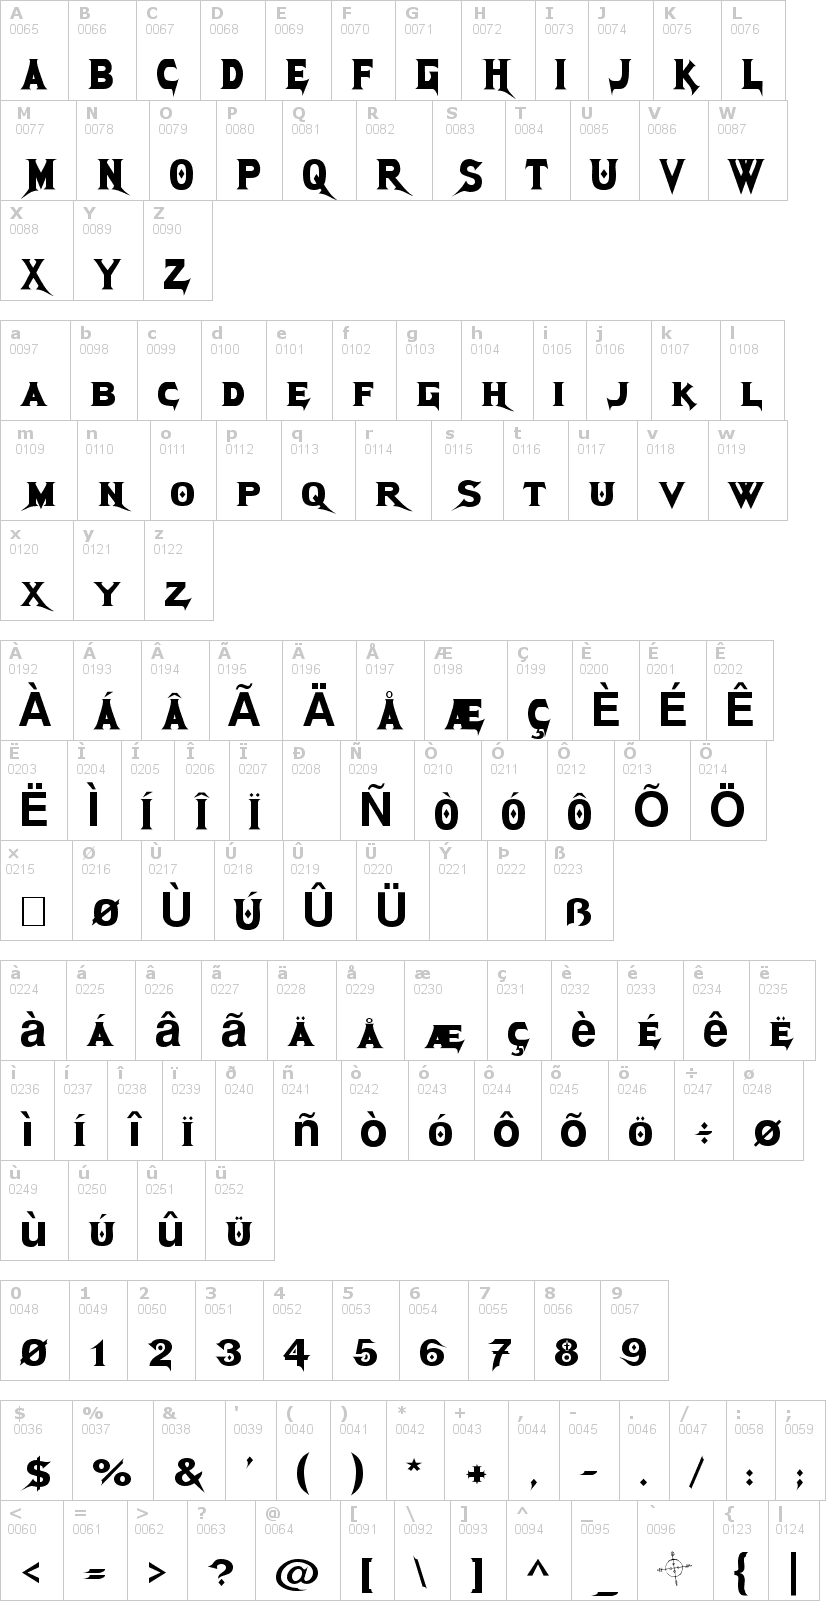 Lettere dell'alfabeto del font megadeth con le quali è possibile realizzare adesivi prespaziati